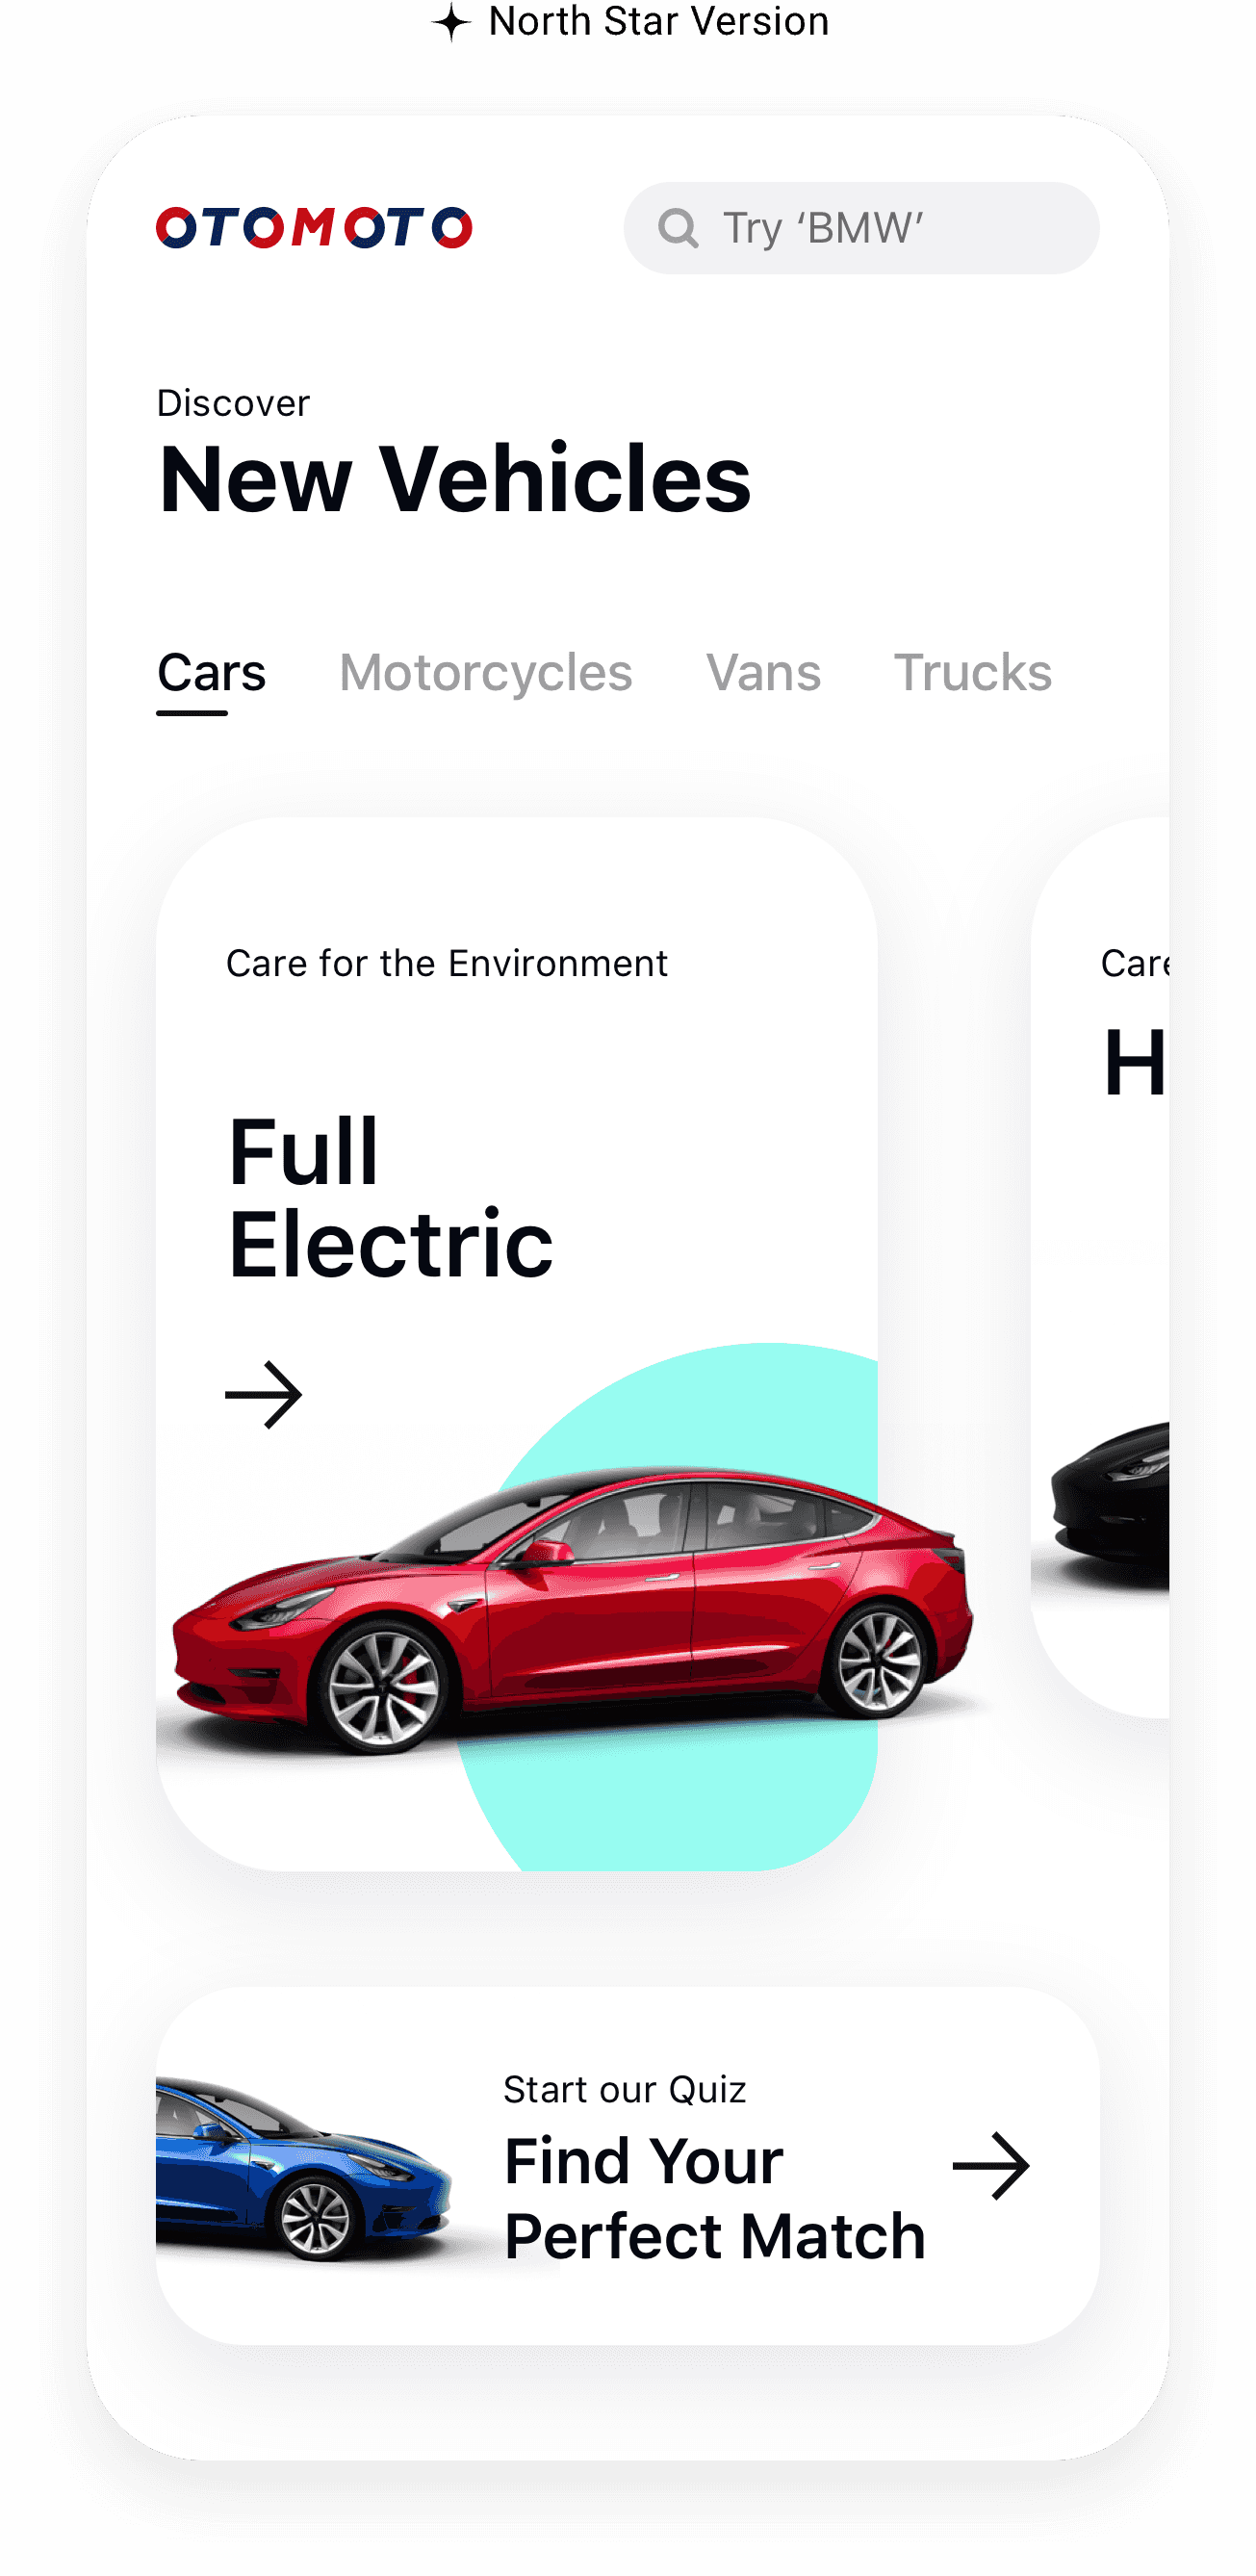 Concept de design UX/UI pour une application mobile de recherche de voiture